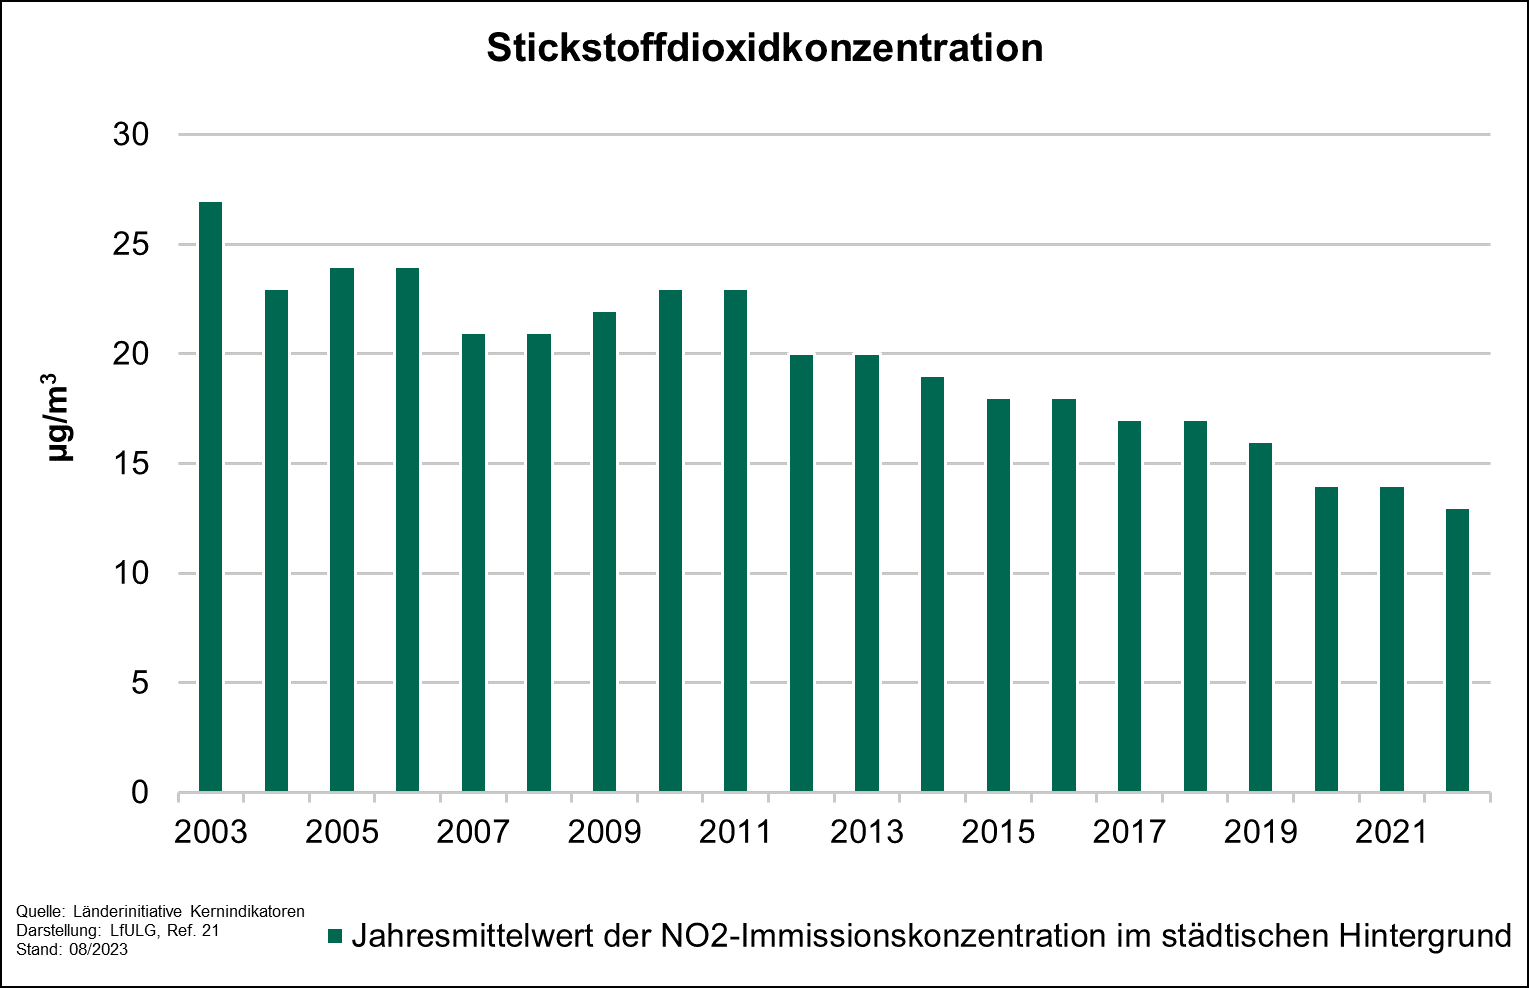 Die Grafik zeigt die Entwicklung des Indikators Stickstoffdioxidkonzentration für die Jahre 2003 bis 2022. Insgesamt ist trotz leichter Schwankungen eine fallende Tendenz des Indikators zu erkennen.